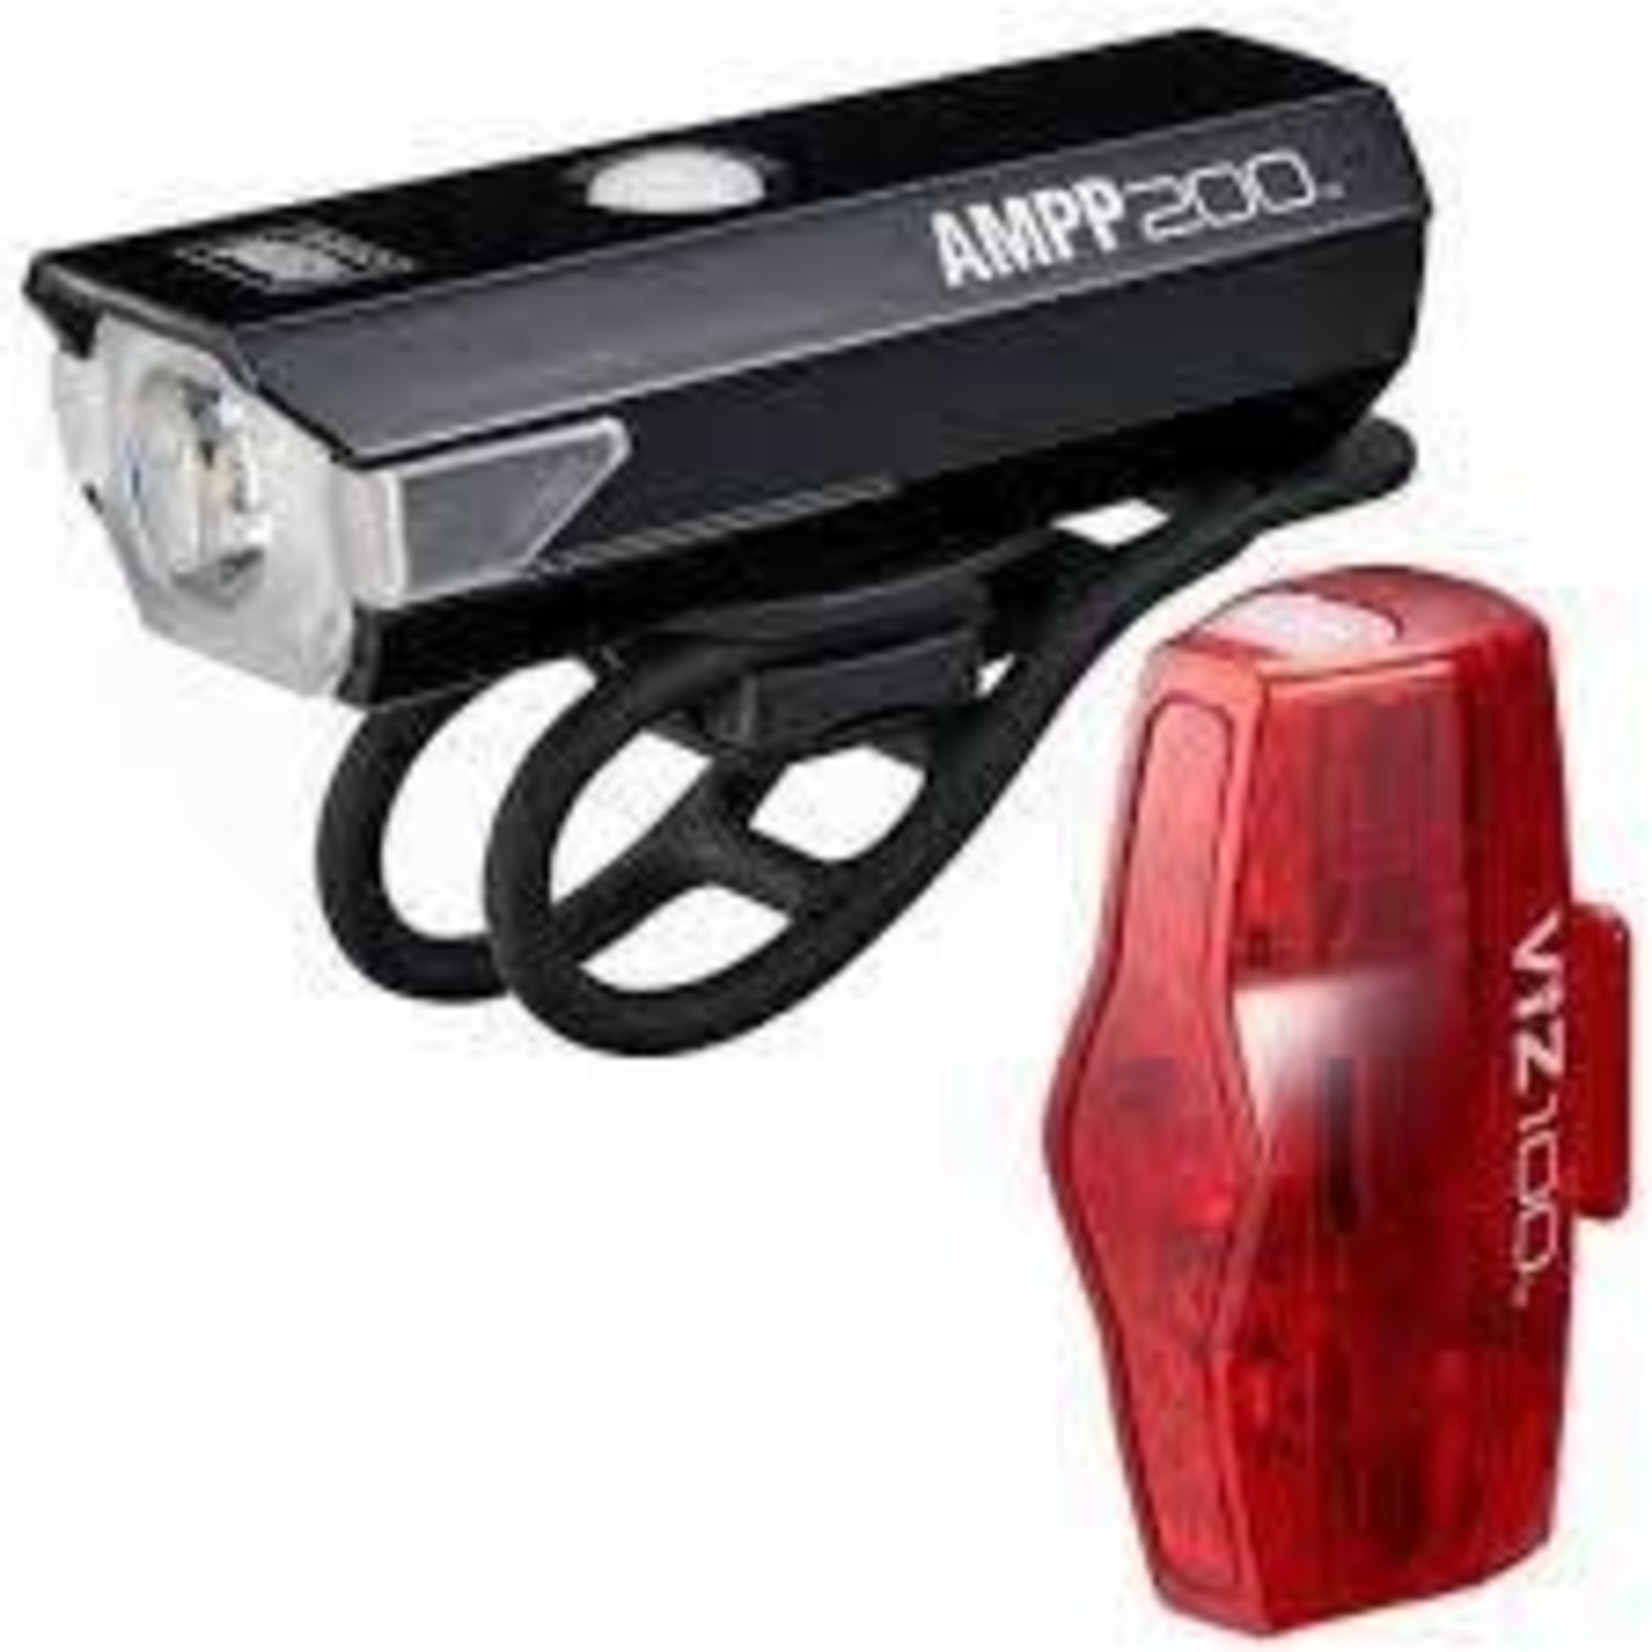 Cat Eye Ampp 200 - Viz 100 Combo Light Set